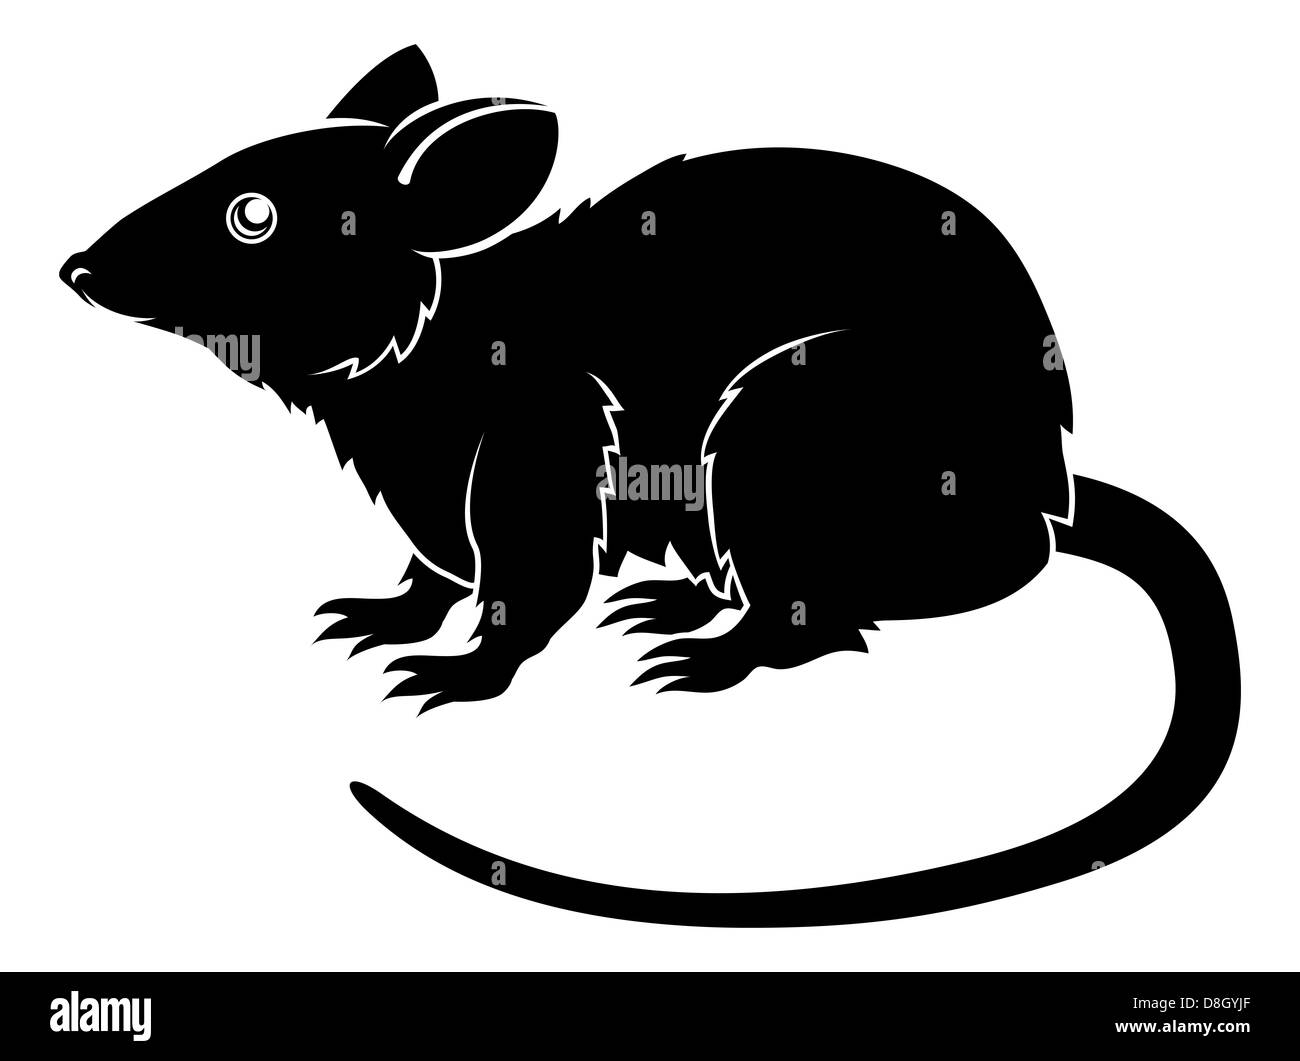 Una illustrazione di un ratto stilizzato forse un tatuaggio di ratto Foto Stock